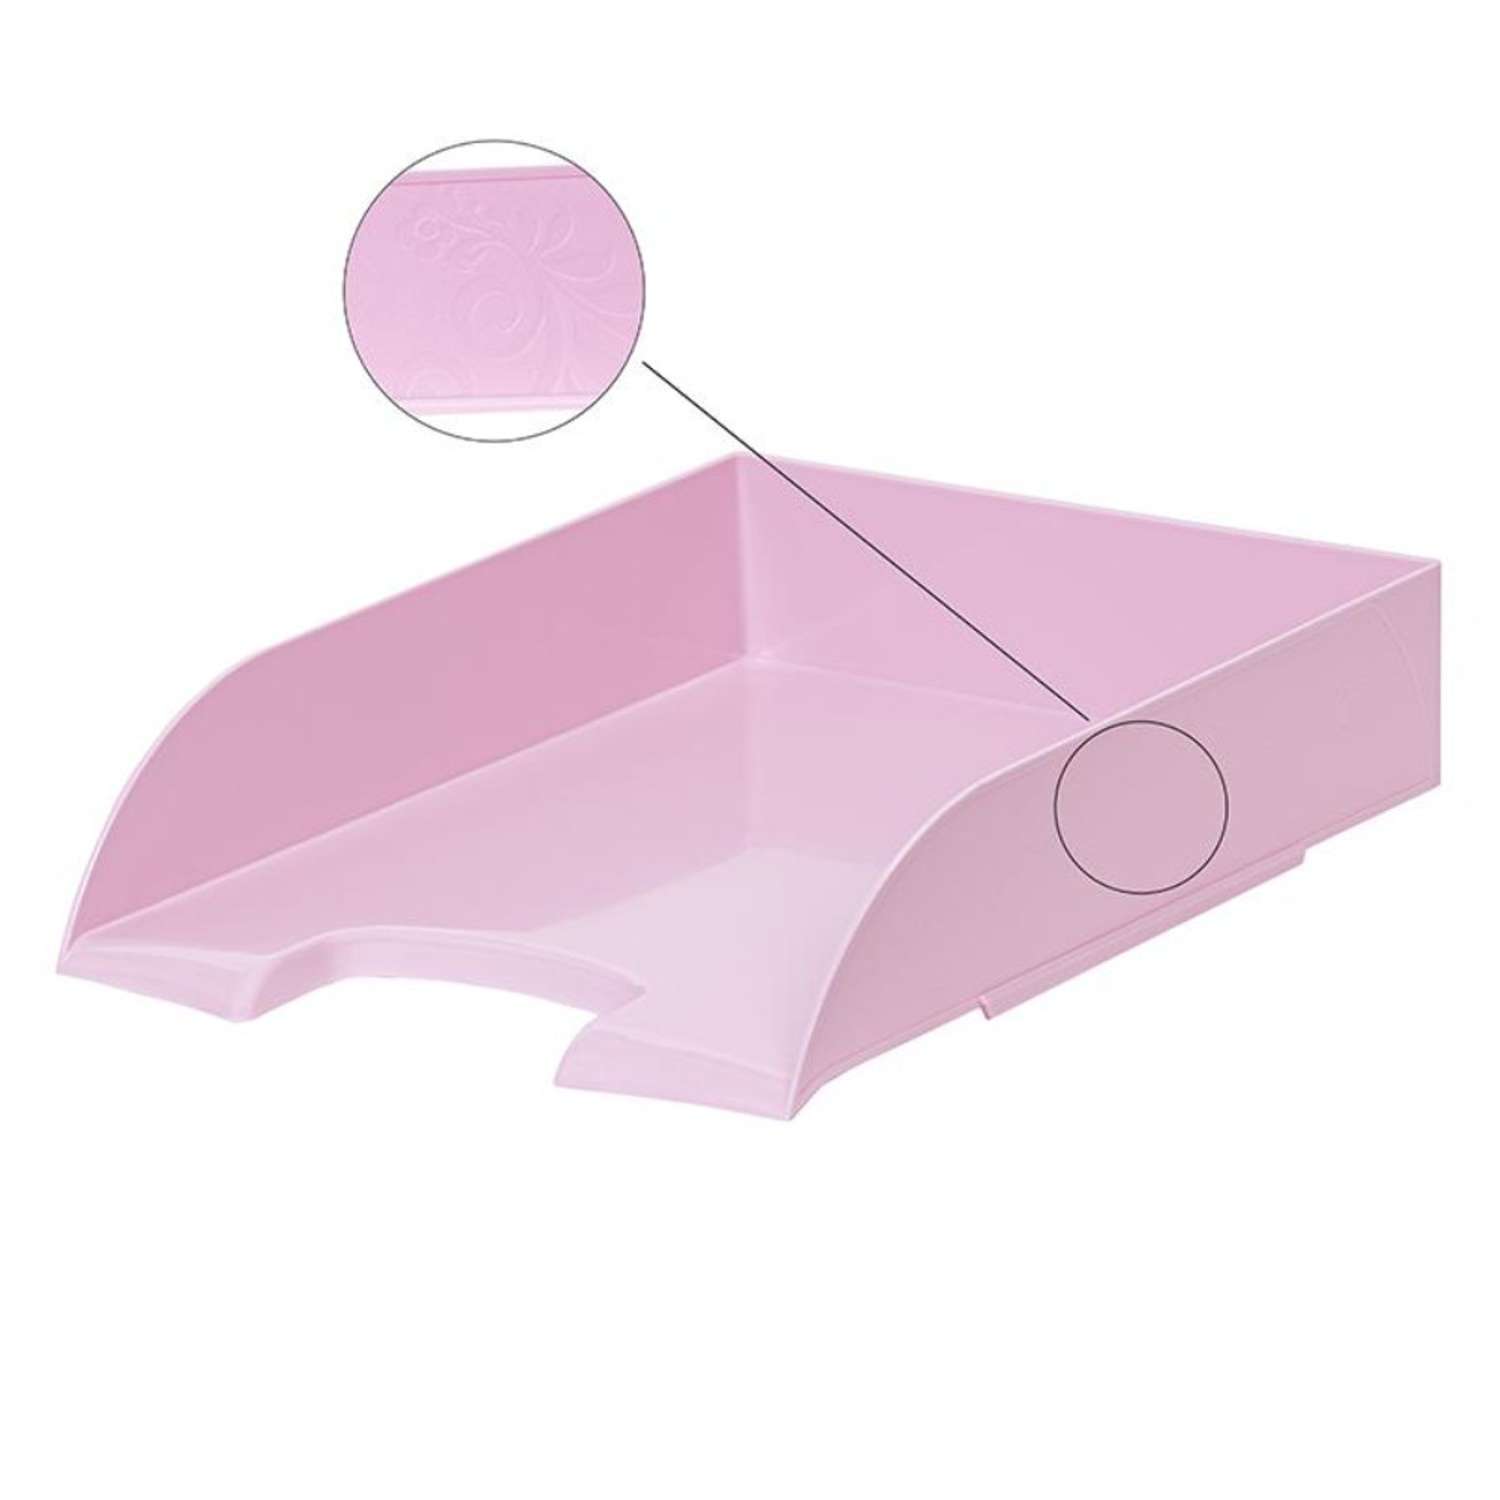 Лоток Attache для бумаг Selection Flamingo прозрачный розовый 1 шт - фото 3